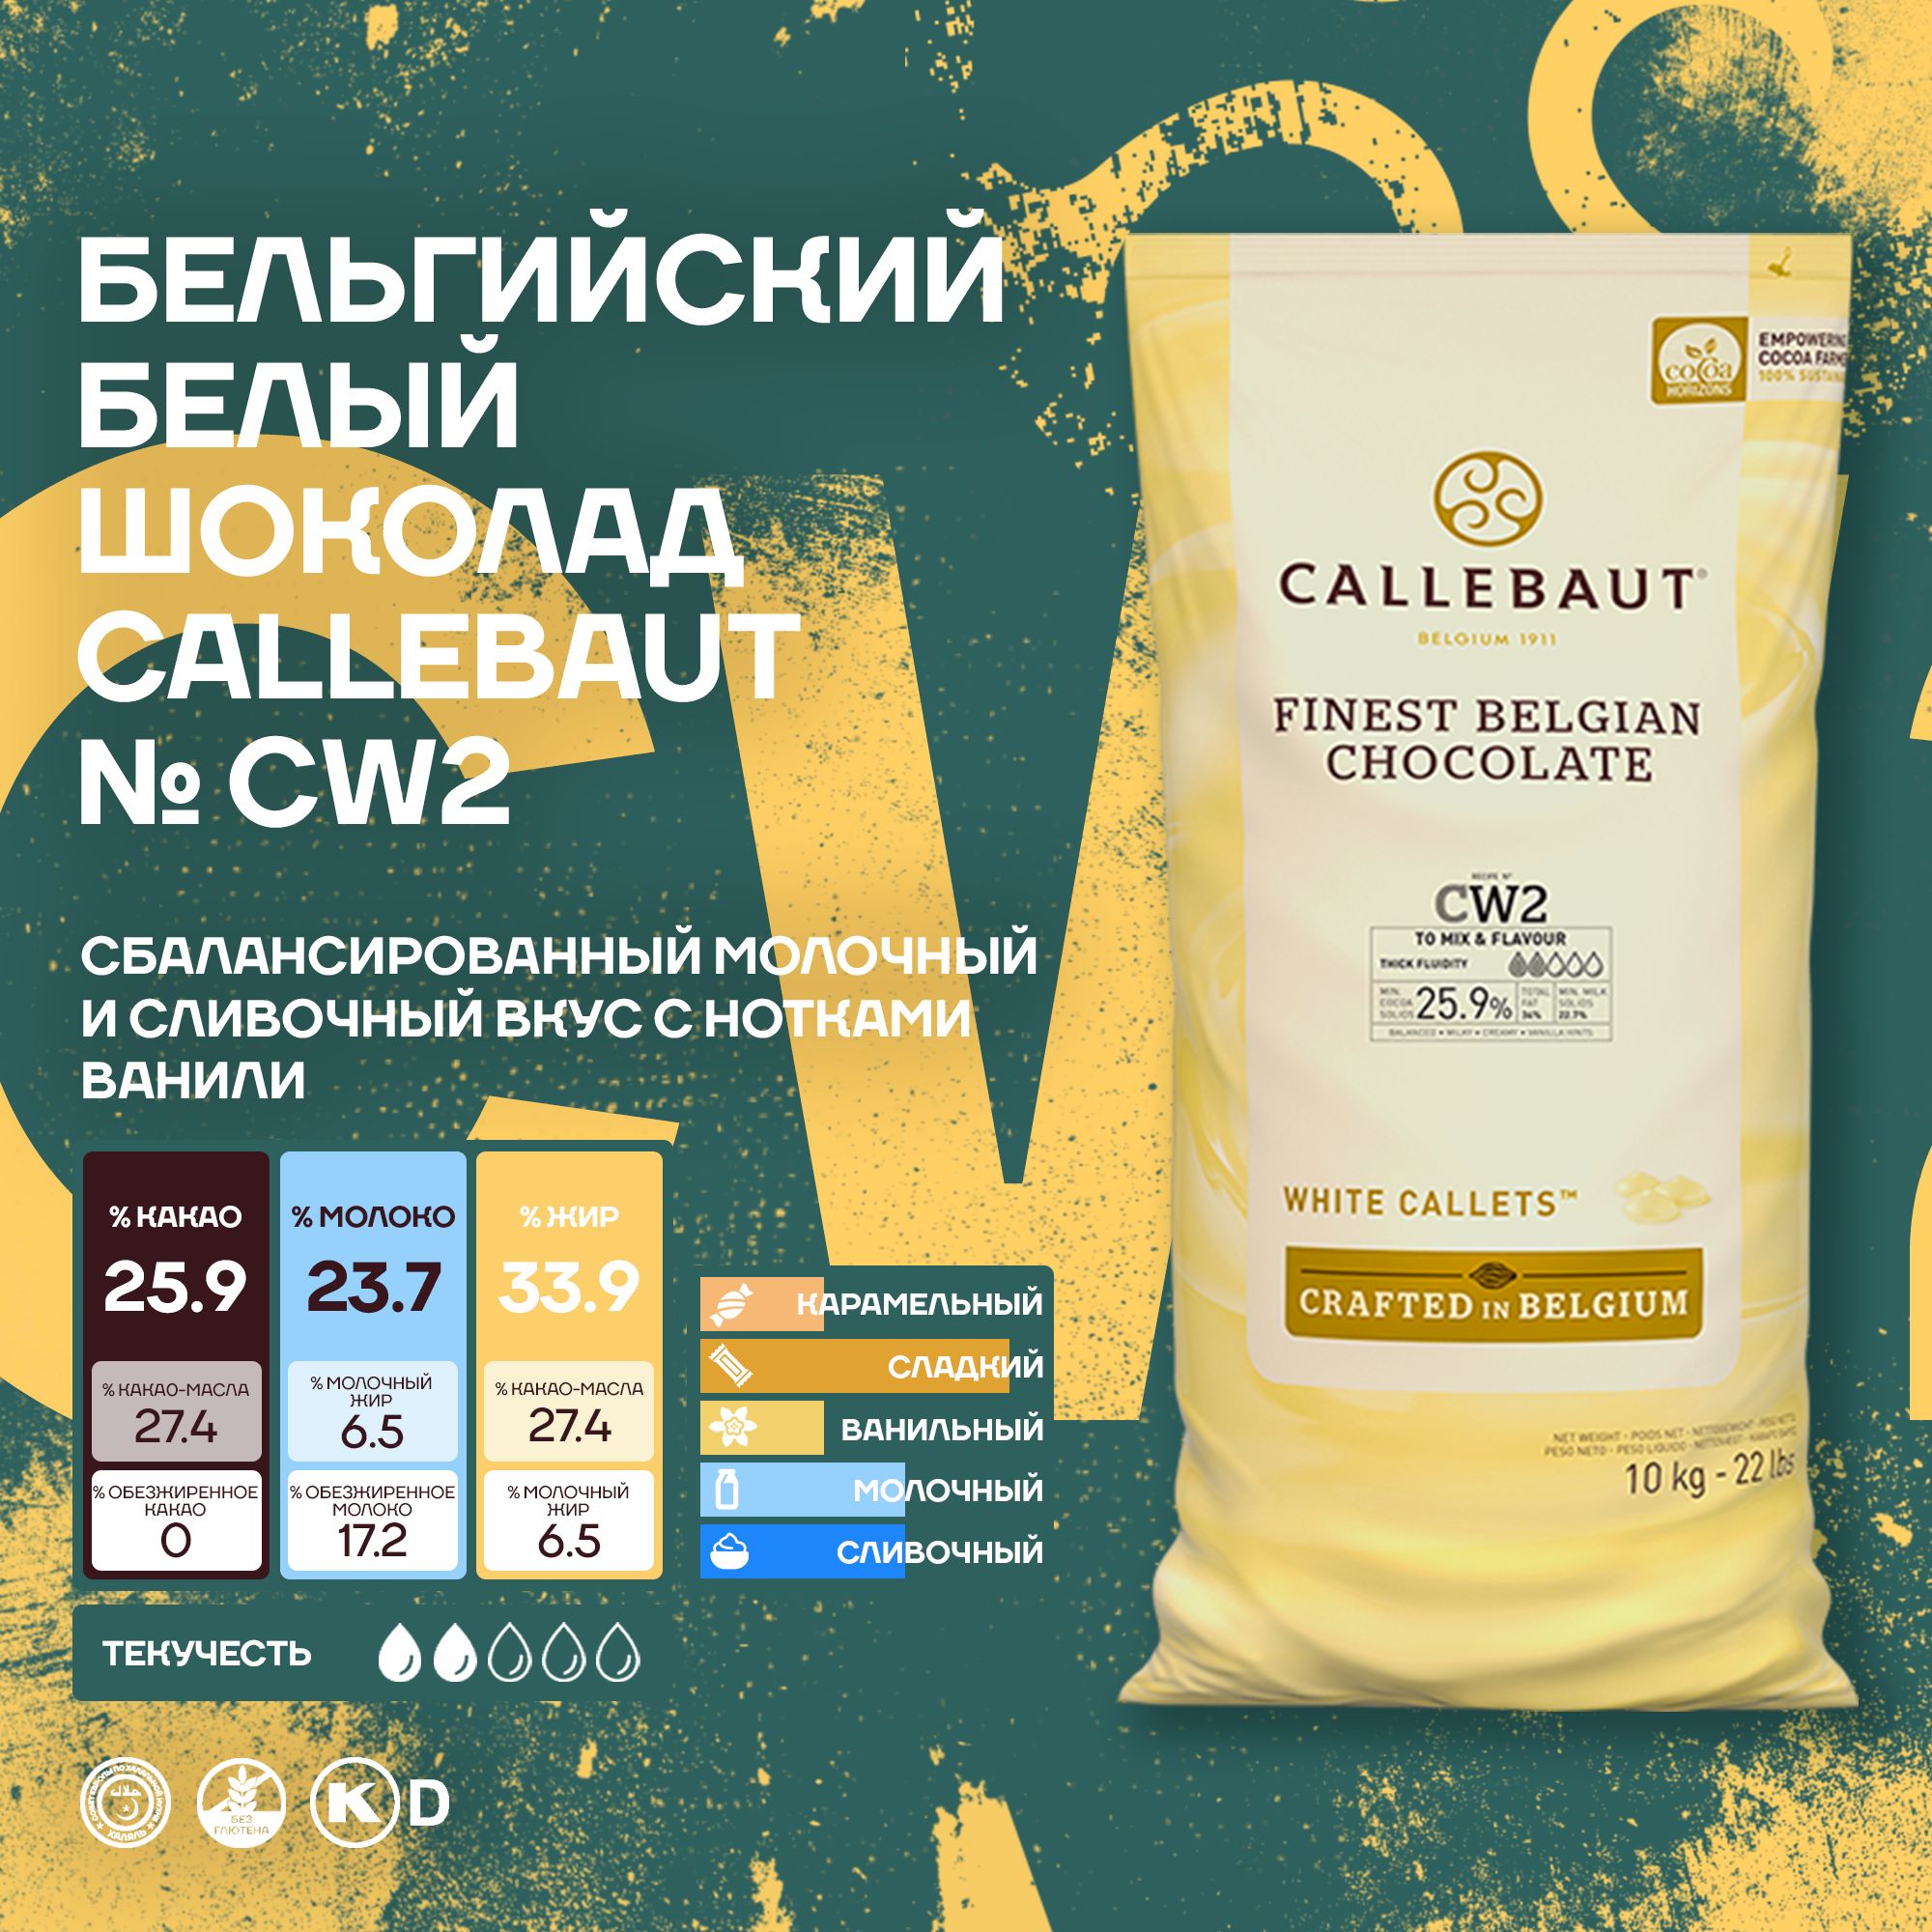 Бельгийский белый шоколад Callebaut CW2 в каллетах, 2 шт х 10 кг